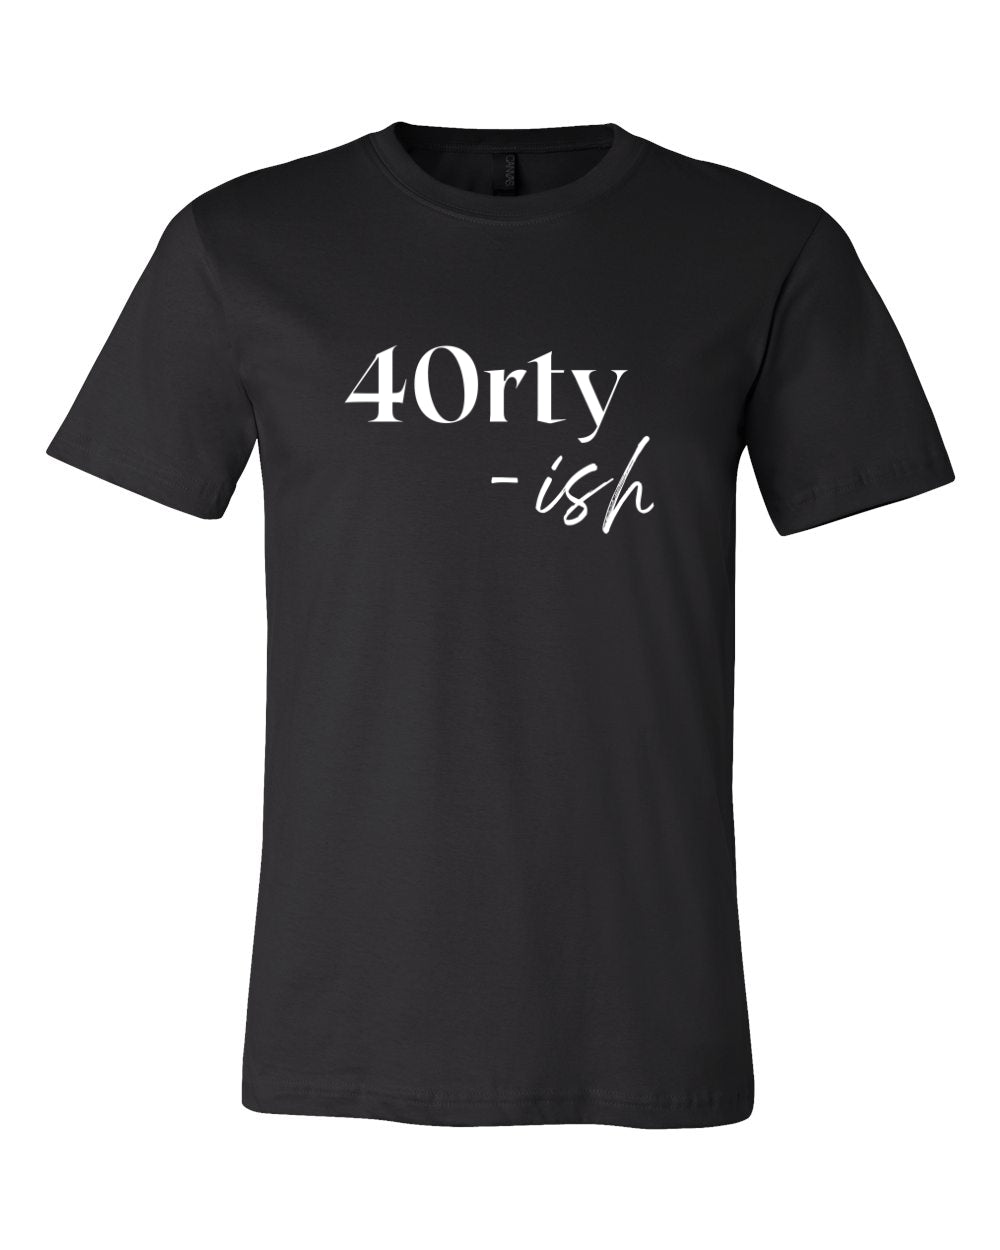 40rty-ish Shirt